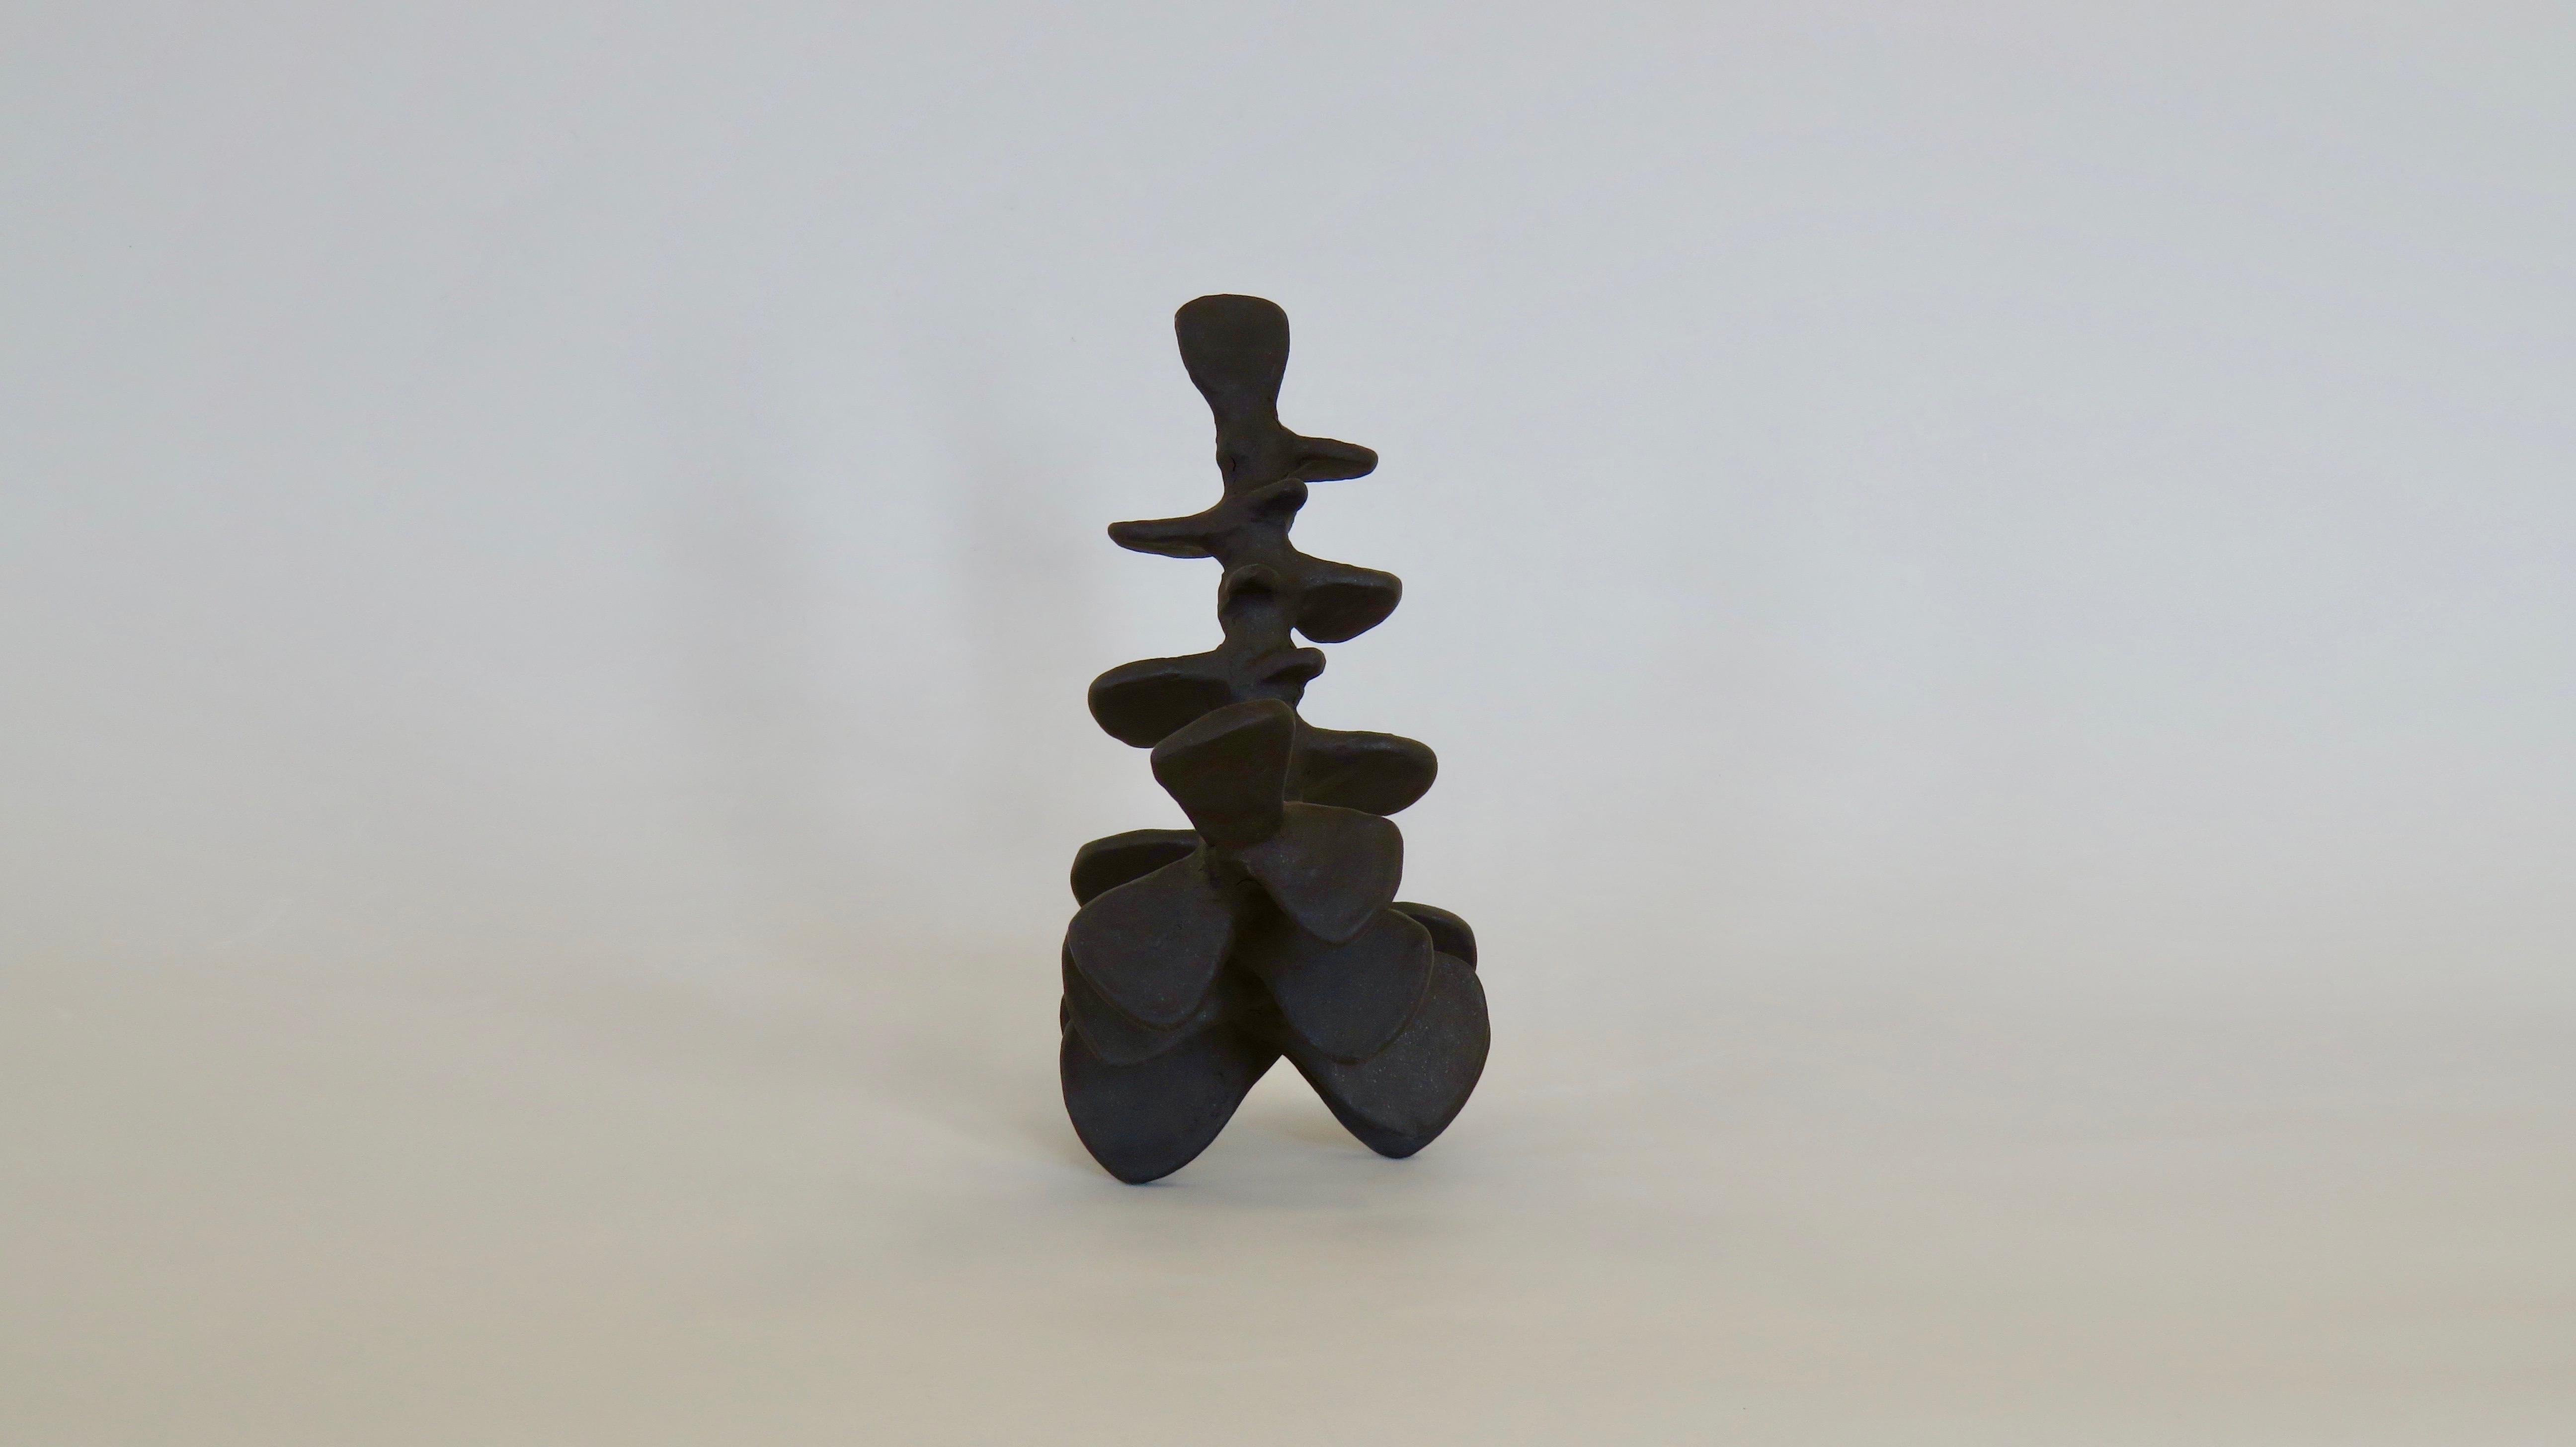 Deep Brown Spine-Like Ceramic Sculpture in Brown Stoneware, Hand Built (amerikanisch)